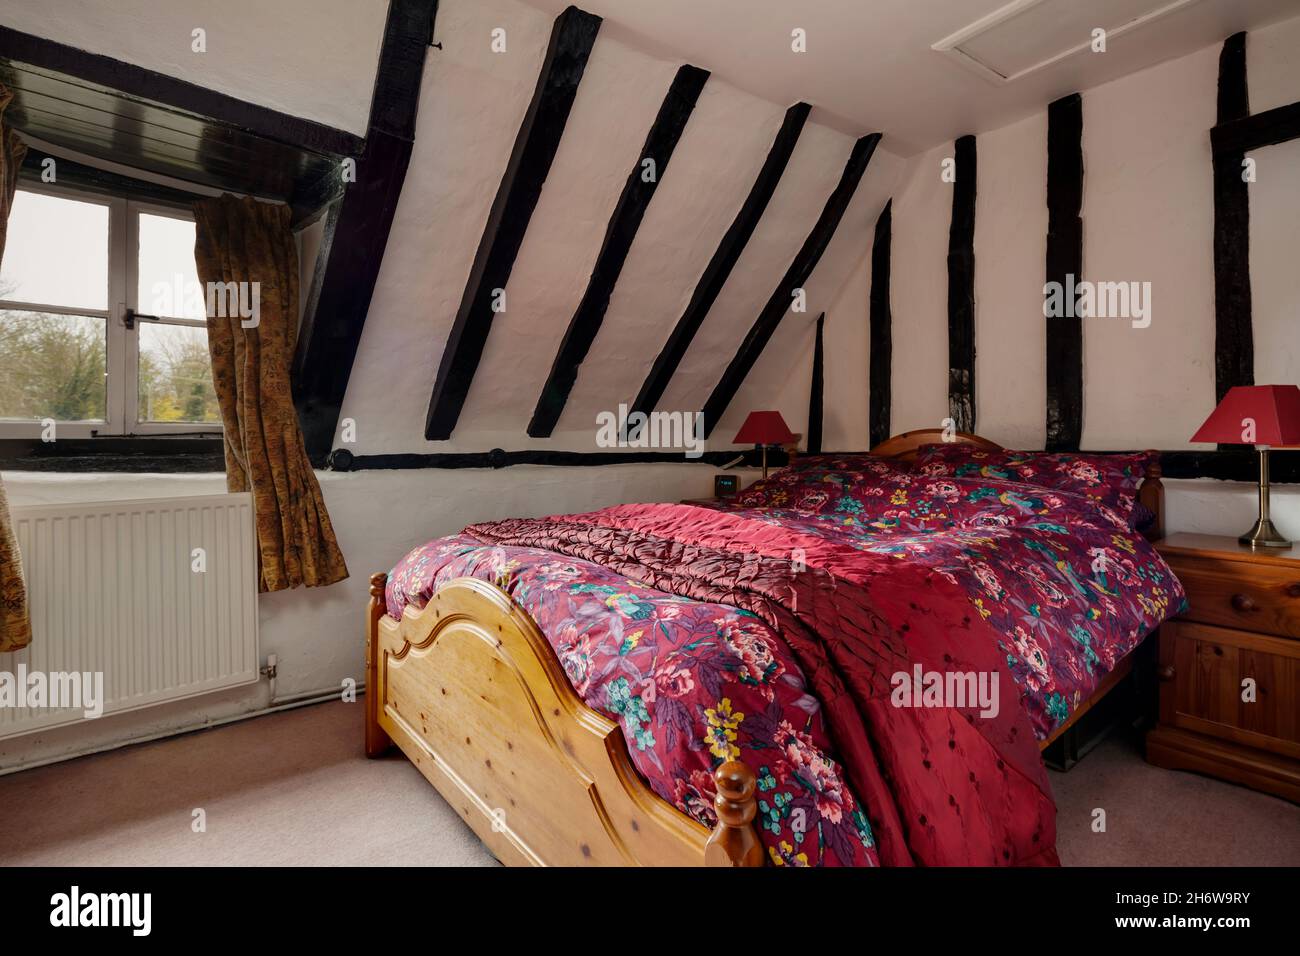 Kedington, Suffolk, novembre 19 2019: Chambre dans un très vieux cottage britannique traditionnel avec une abondance de bois exposés Banque D'Images